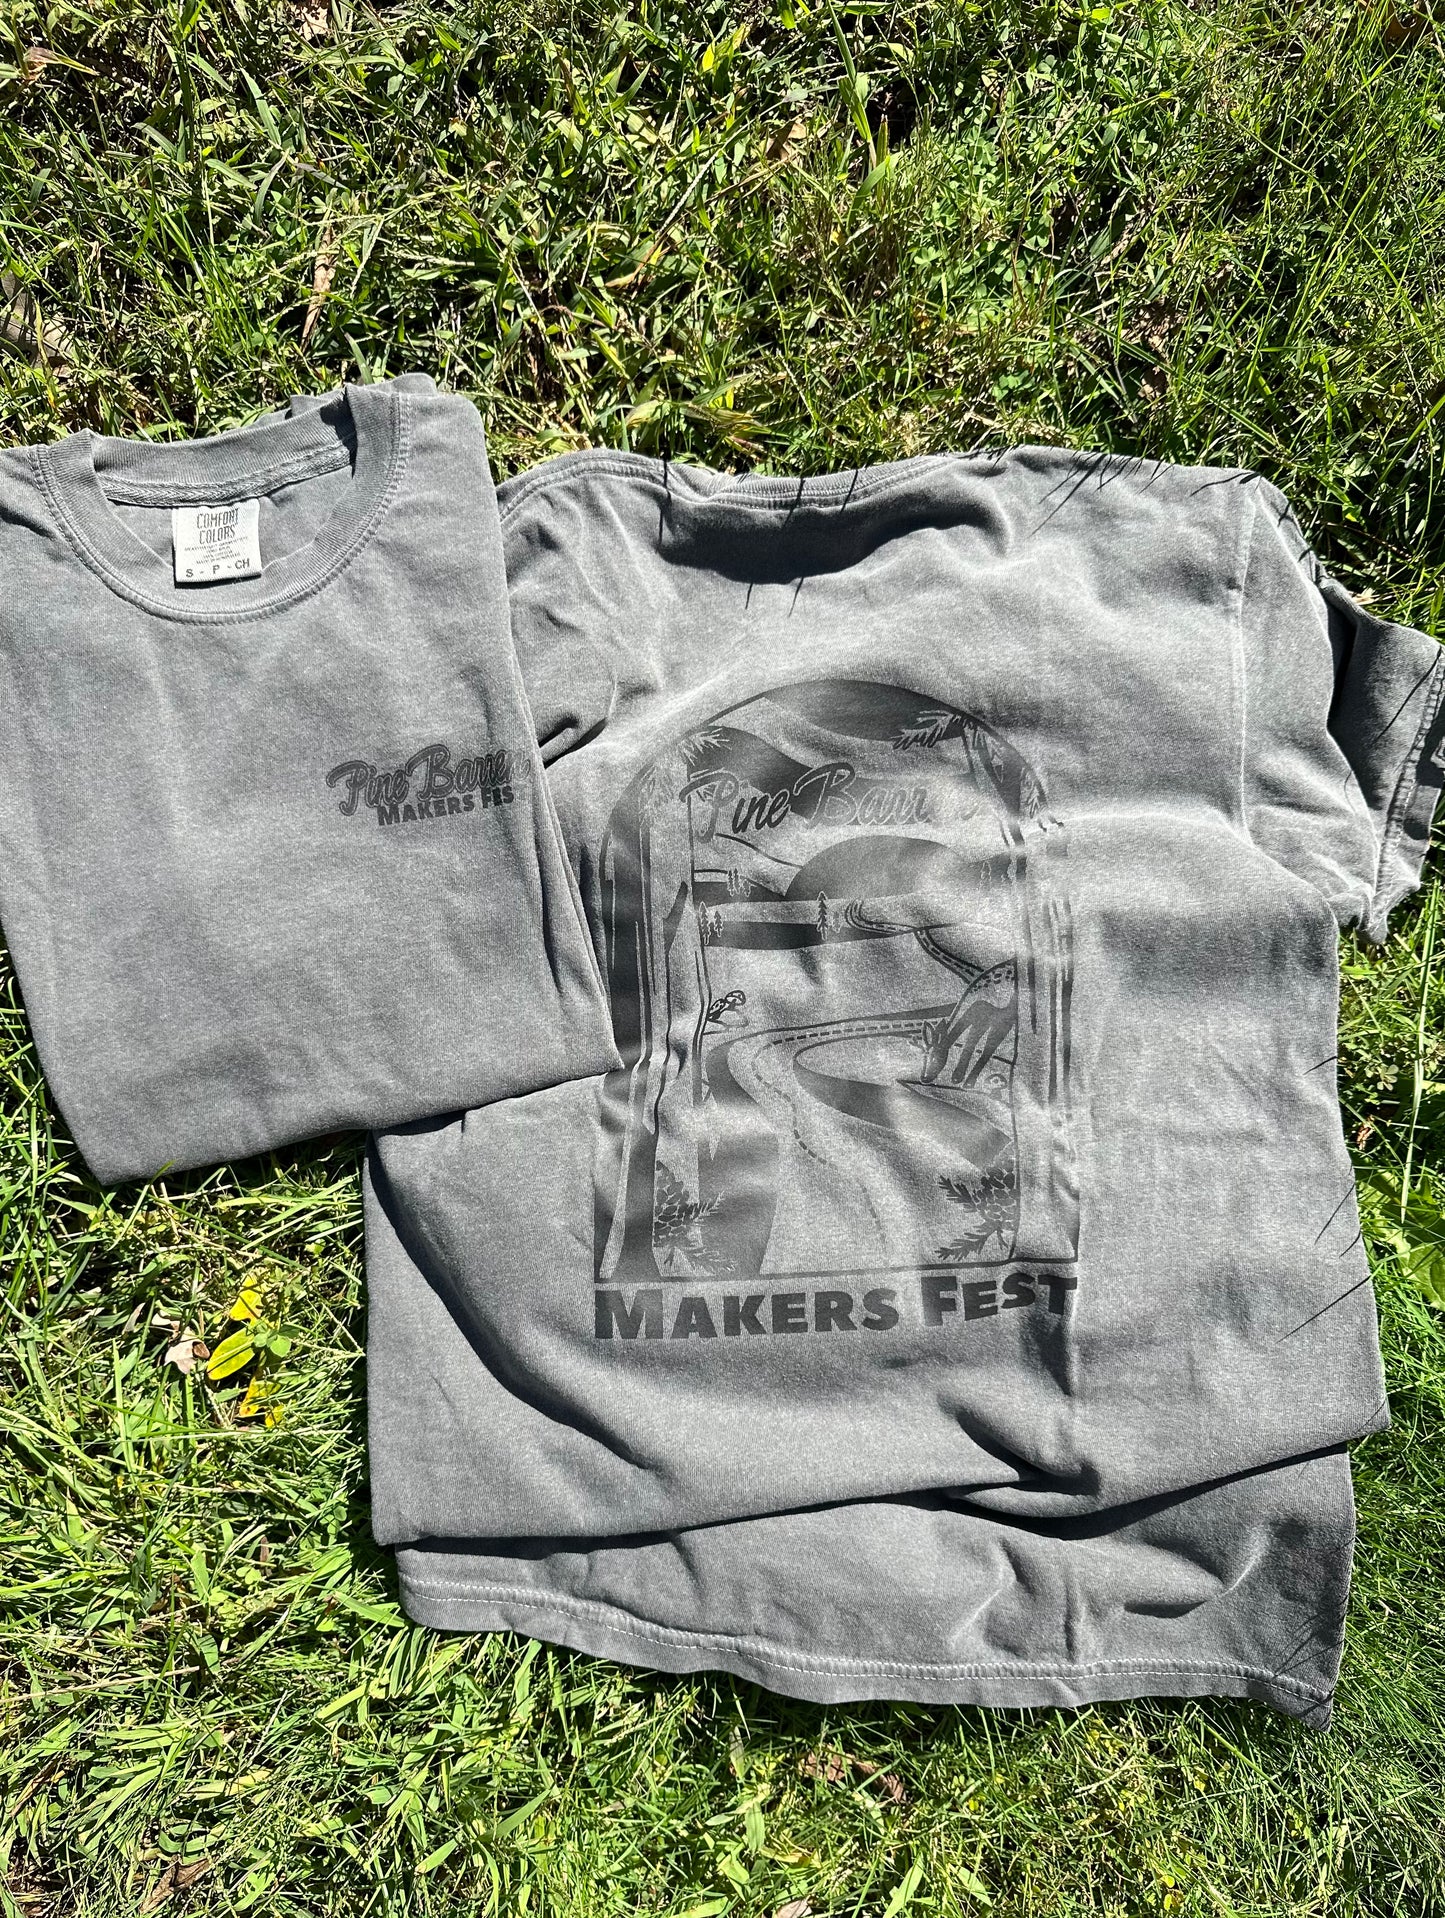 Pine Barren Makers Fest T-Shirt